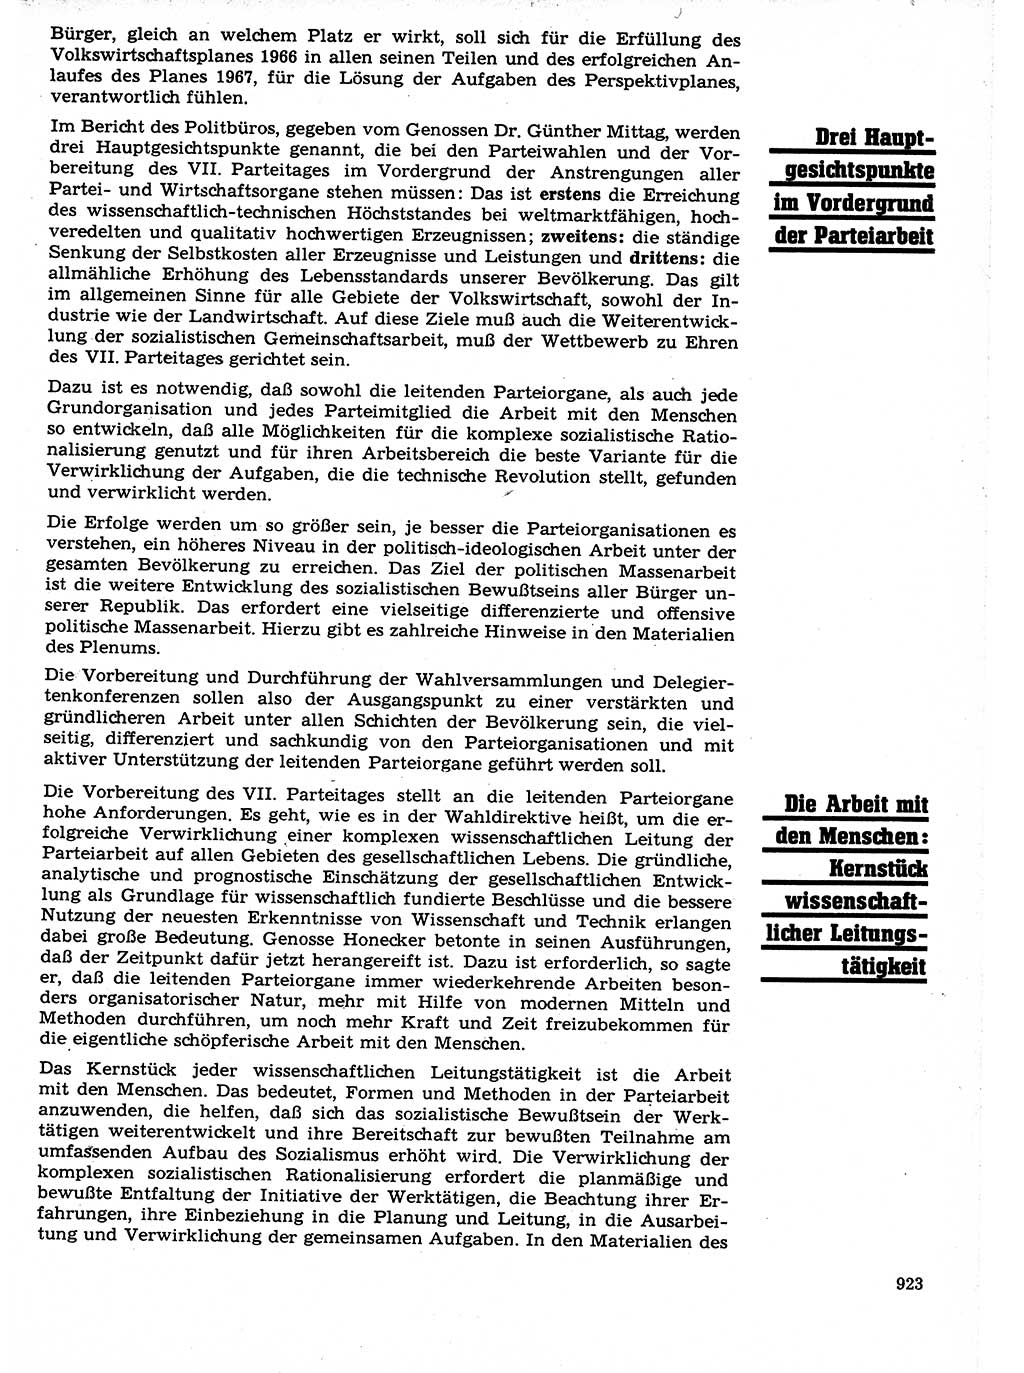 Neuer Weg (NW), Organ des Zentralkomitees (ZK) der SED (Sozialistische Einheitspartei Deutschlands) für Fragen des Parteilebens, 21. Jahrgang [Deutsche Demokratische Republik (DDR)] 1966, Seite 923 (NW ZK SED DDR 1966, S. 923)